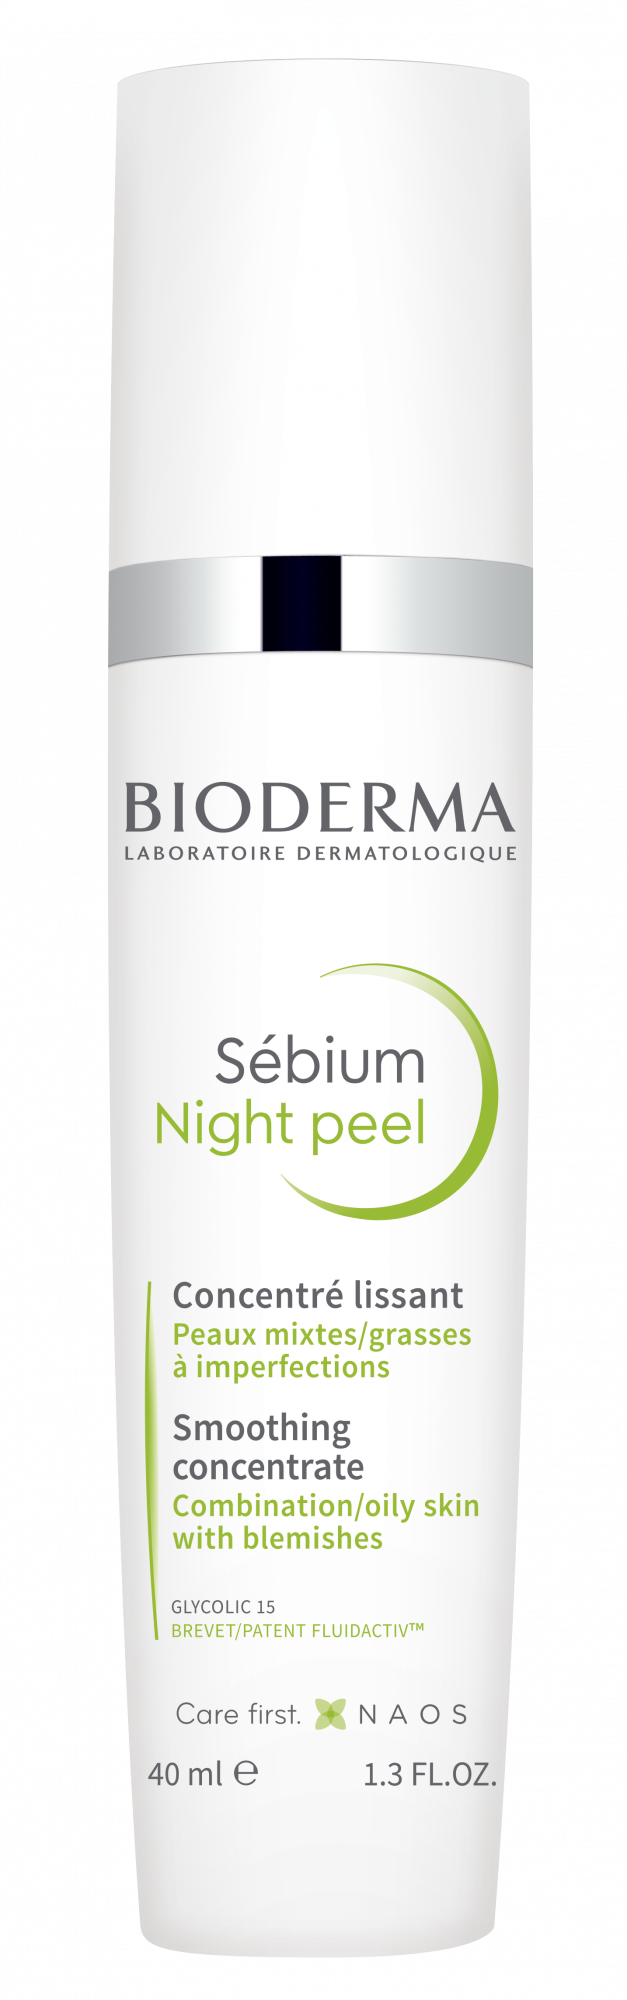 Piele cu probleme - Bioderma Sebium Night Peel crema 30ml, epastila.ro